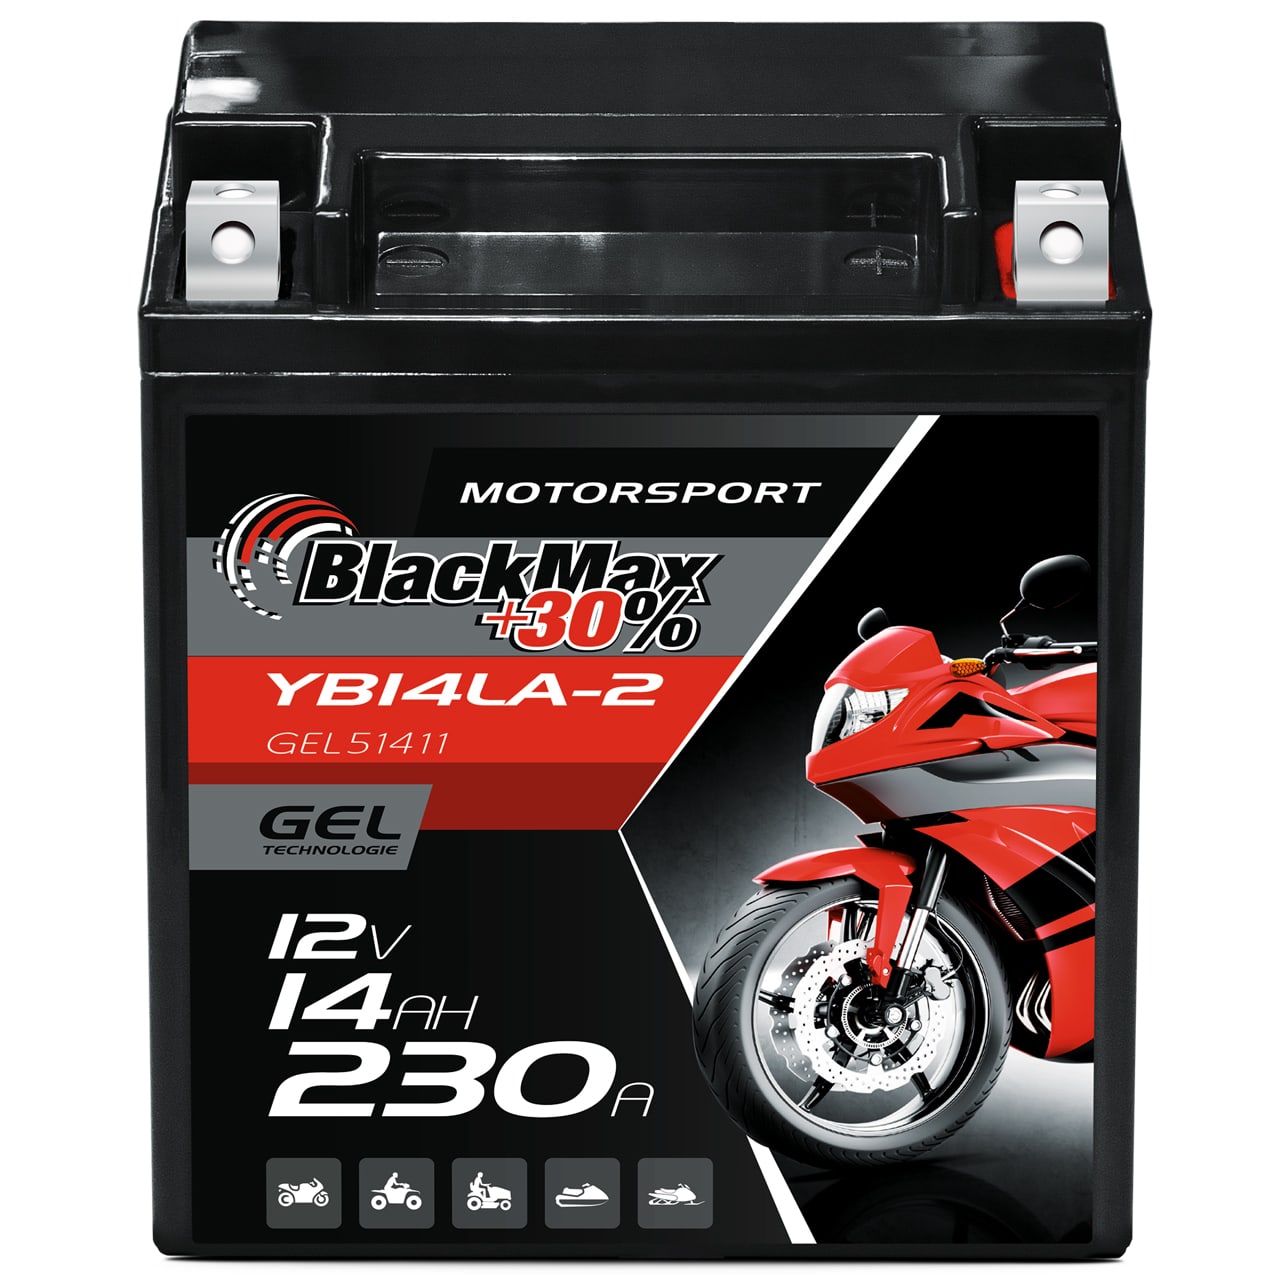 http://www.batterie-industrie-germany.de/cdn/shop/files/Motorradbatterie-Motorsport-GEL-YB14LA-2-BlackMaxGEL51411-12V-14Ah-Front.jpg?v=1700658957